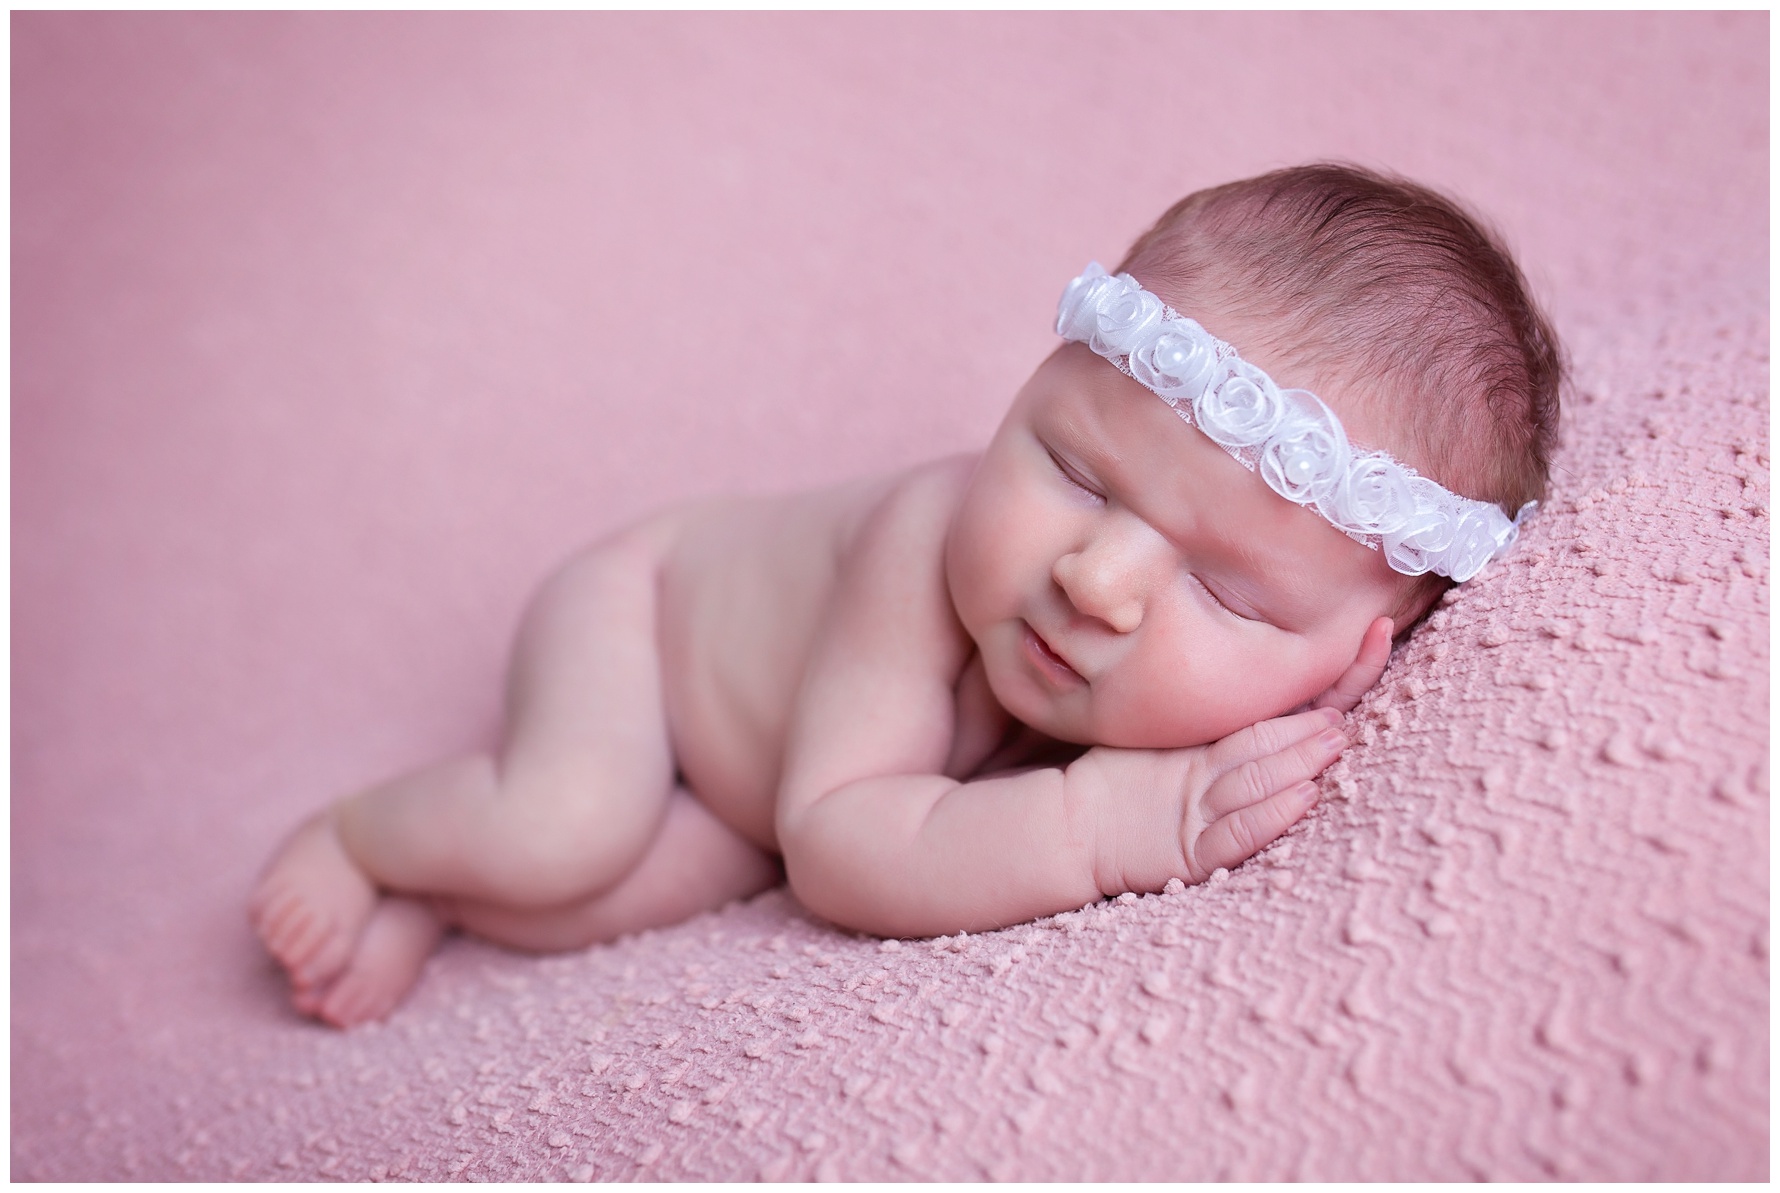 Newborn baby photographer Charlotte